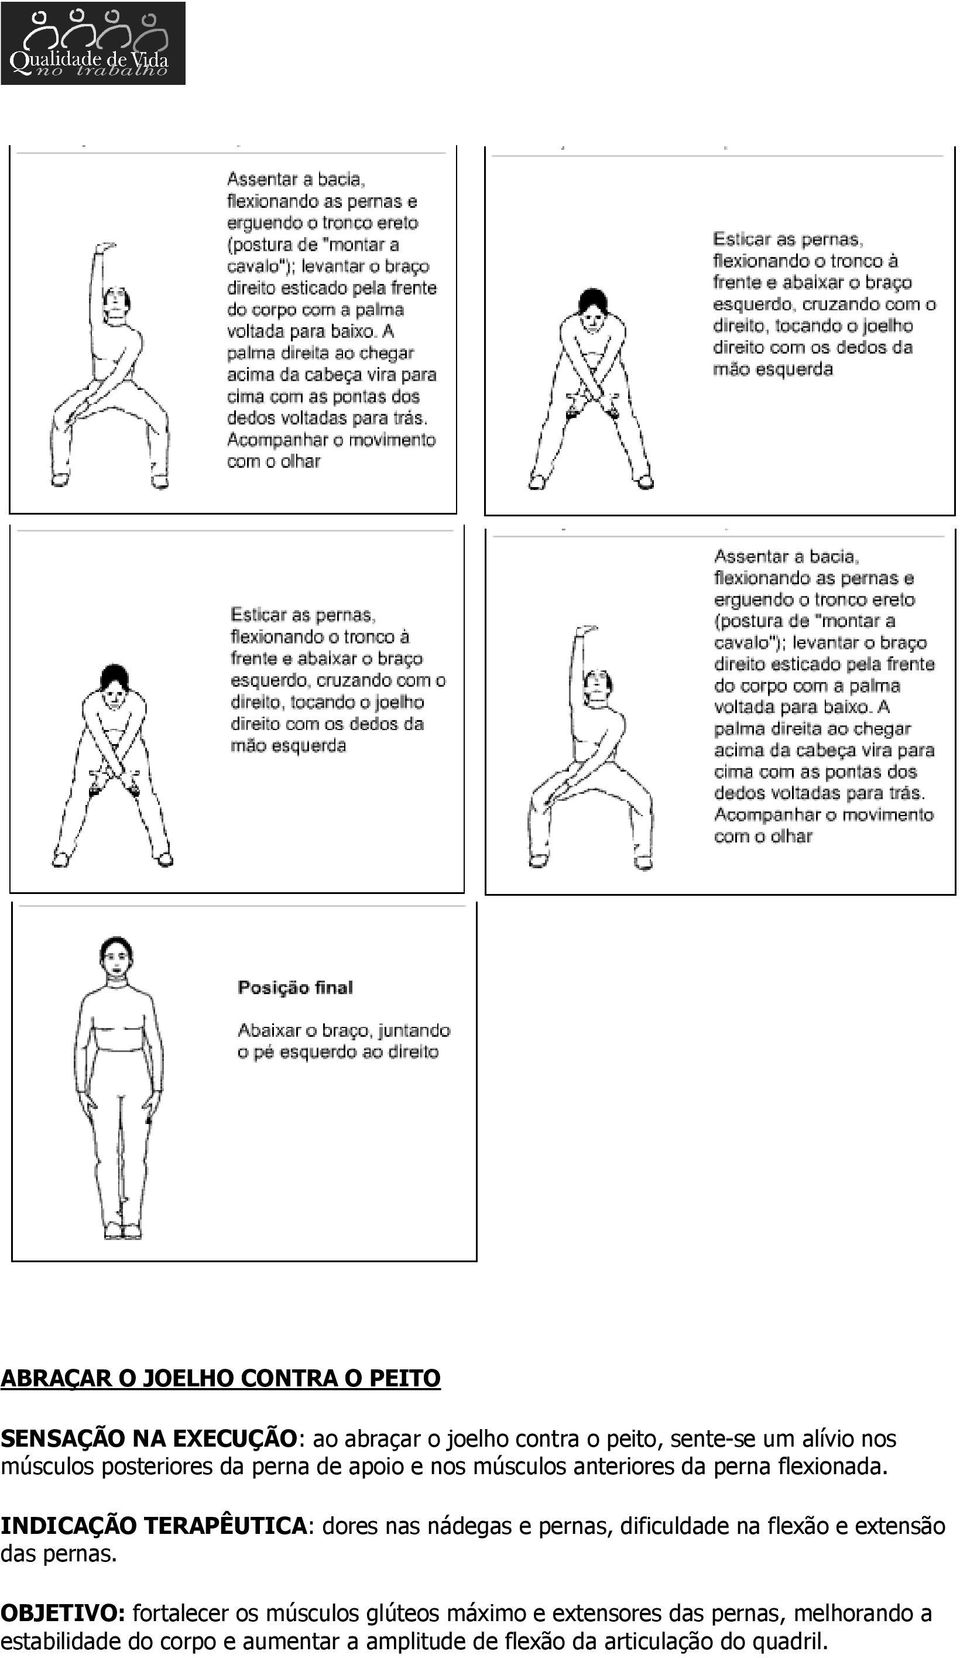 INDICAÇÃO TERAPÊUTICA: dores nas nádegas e pernas, dificuldade na flexão e extensão das pernas.